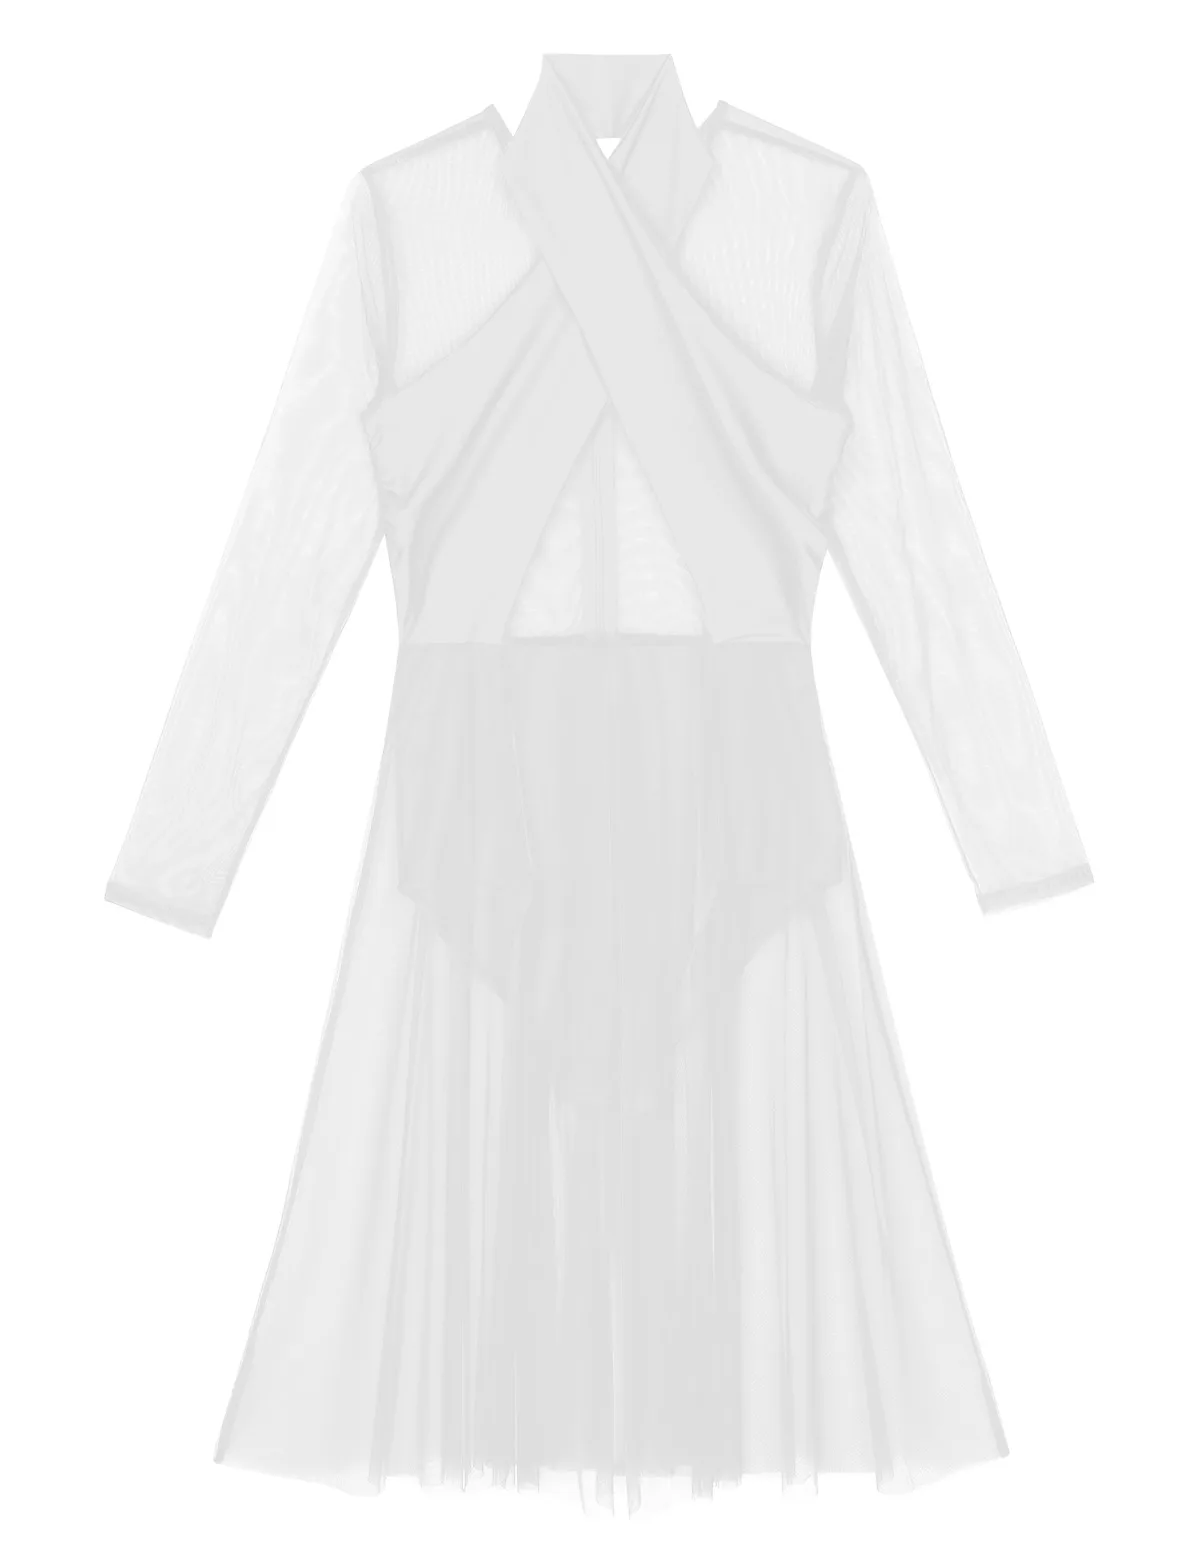 Женская блуза на бретельках с длинными рукавами, прозрачная сетчатая гимнастическая трико для катания на коньках, балетное танцевальное платье для взрослых, современные лирические танцевальные костюмы